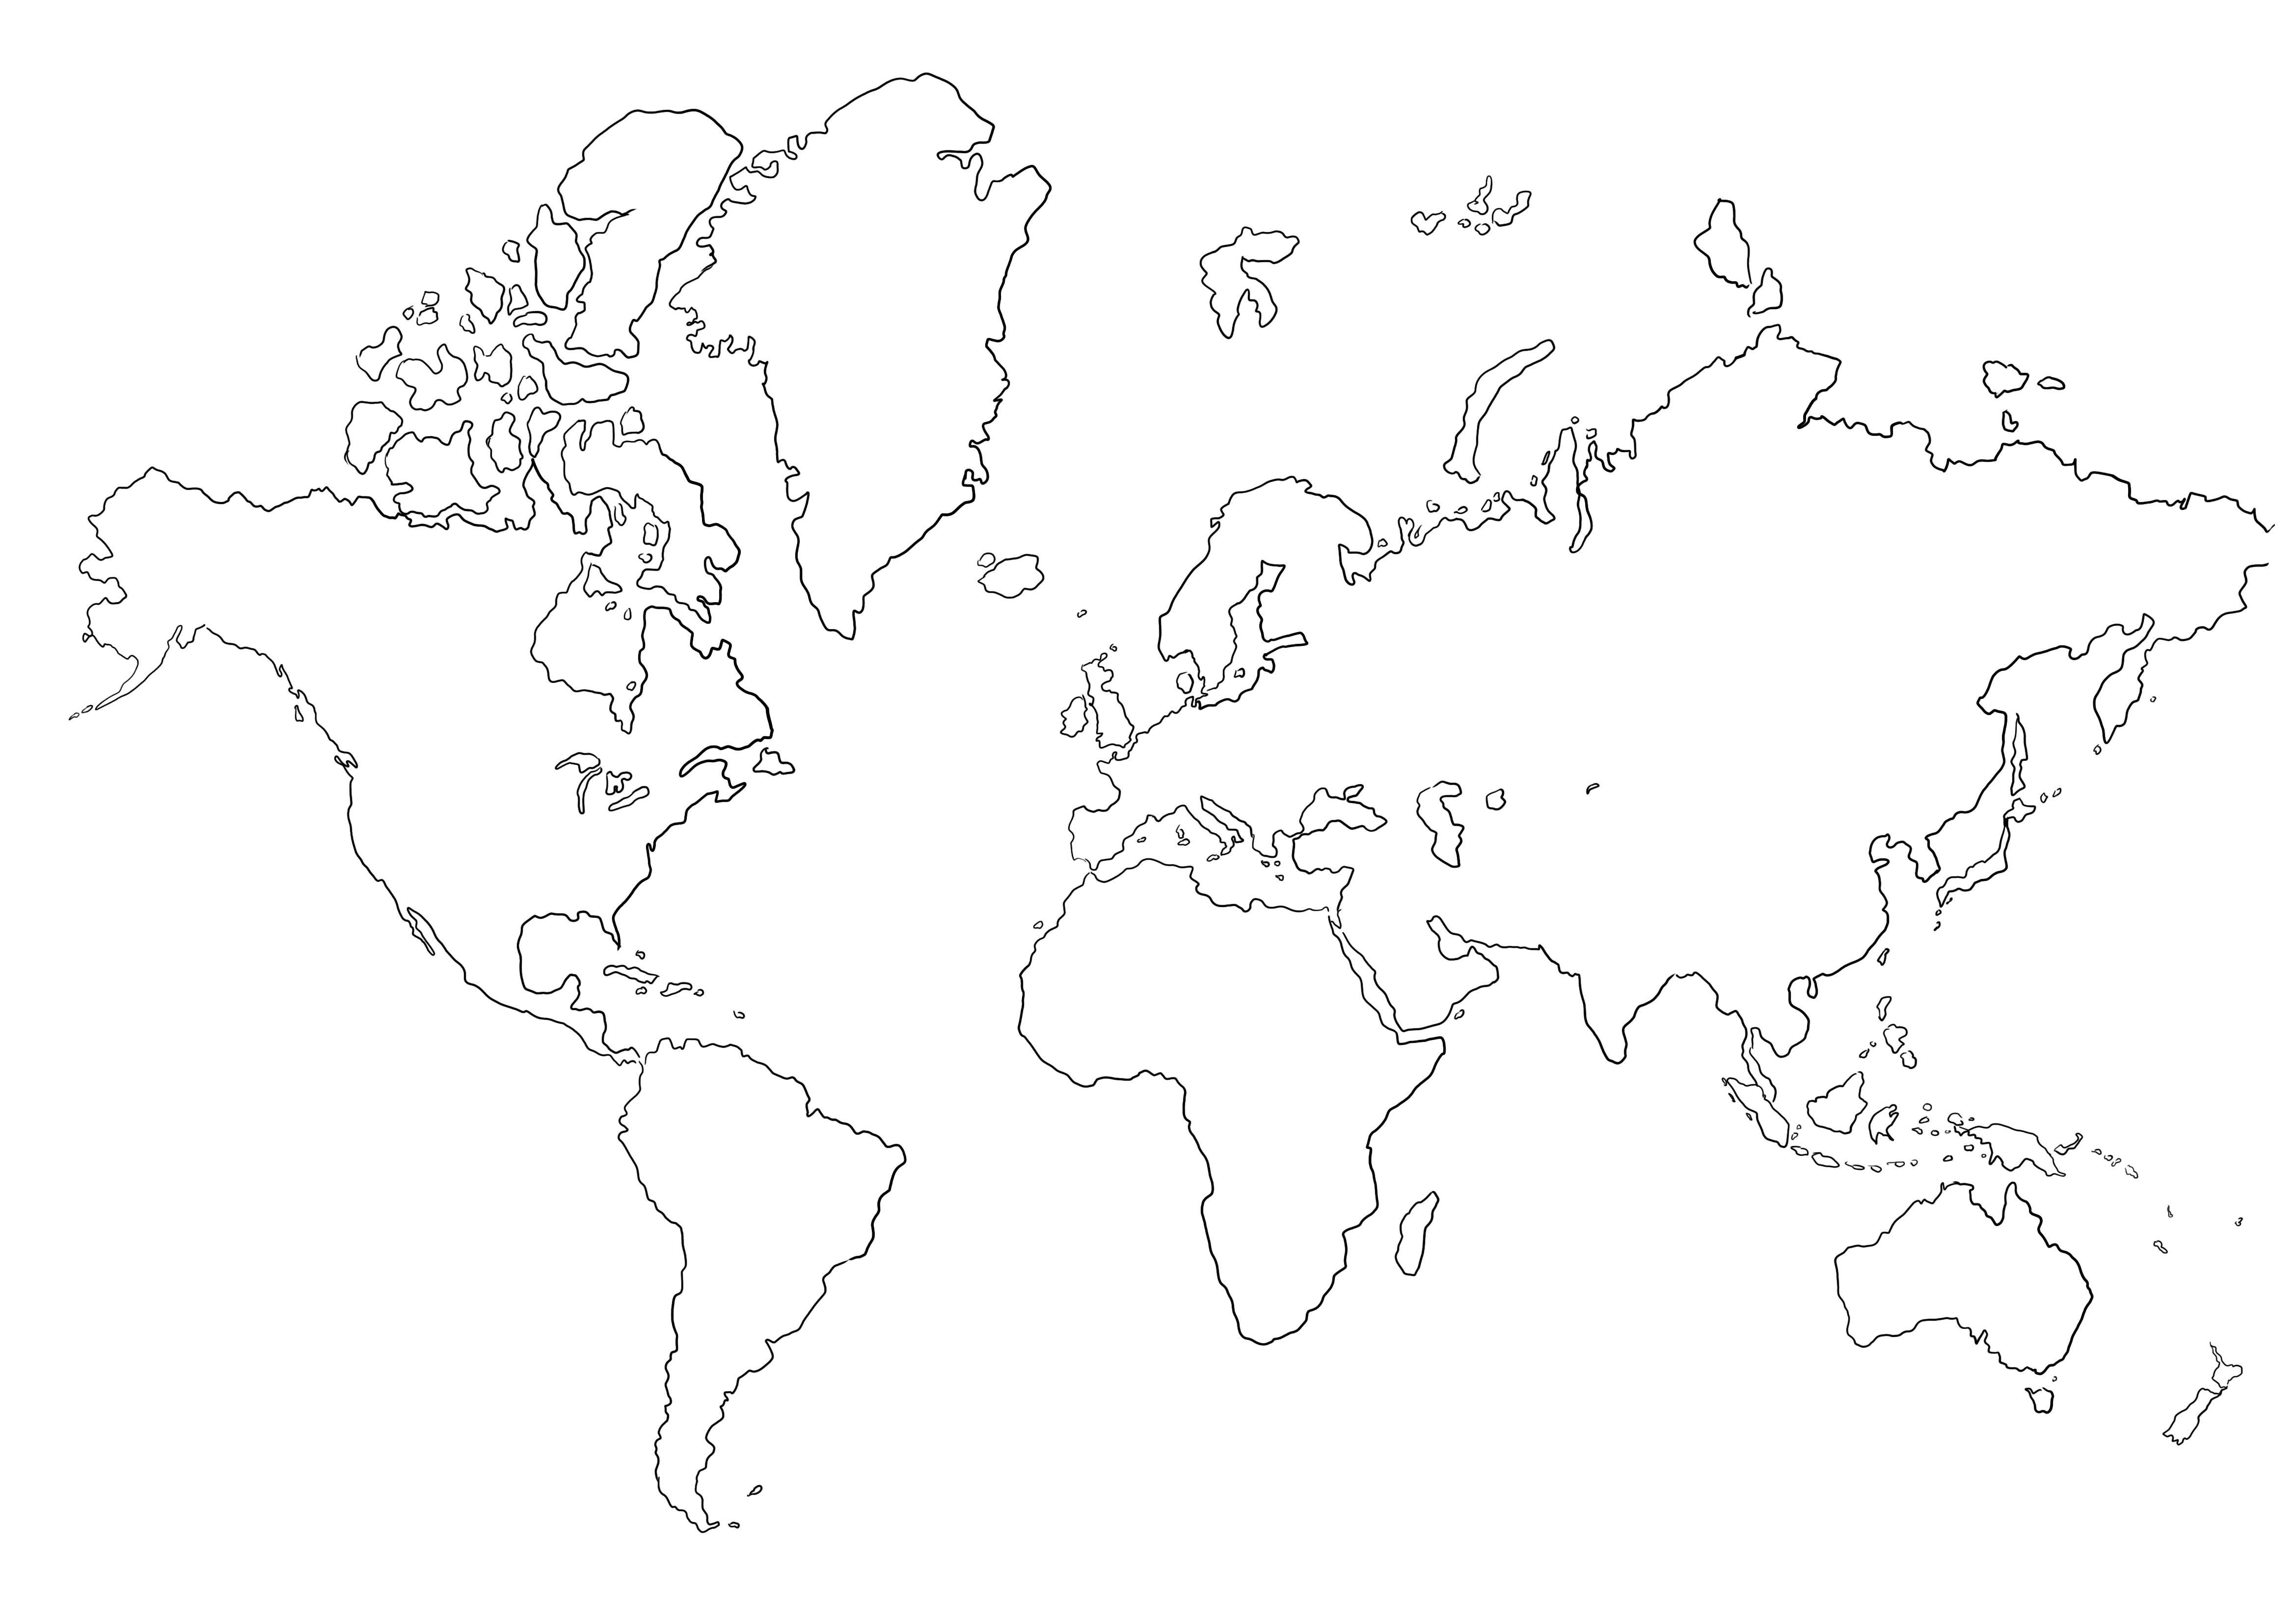 Pusta mapa świata do kolorowania bez obrazków do wydrukowania lub zapisania na później